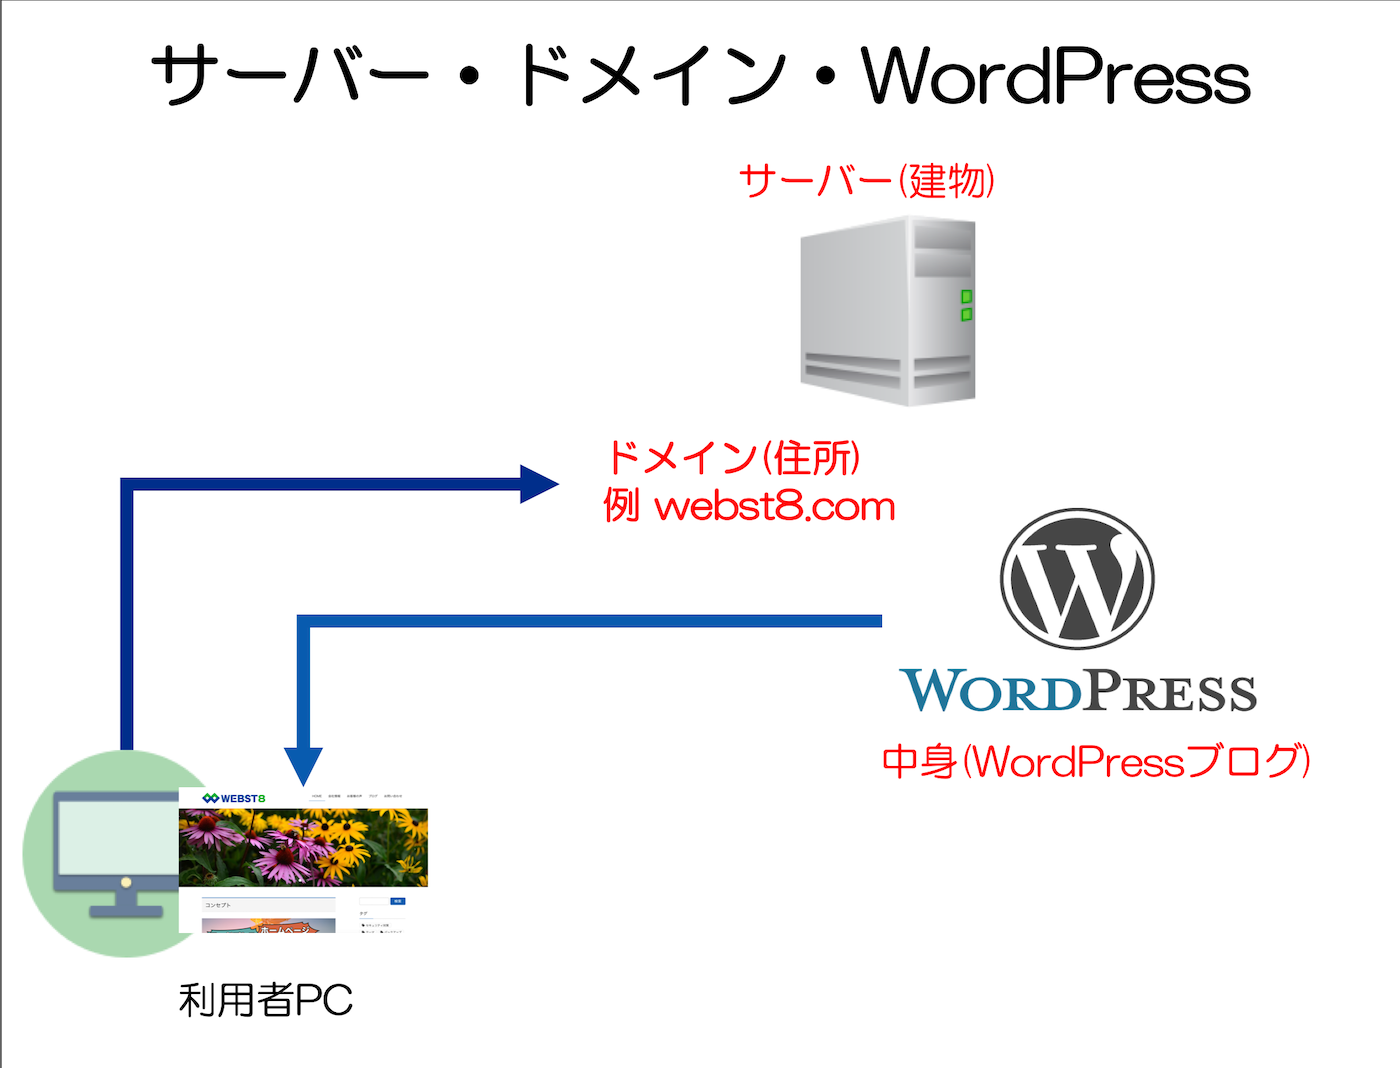 サーバー・ドメイン・WordPressの説明図